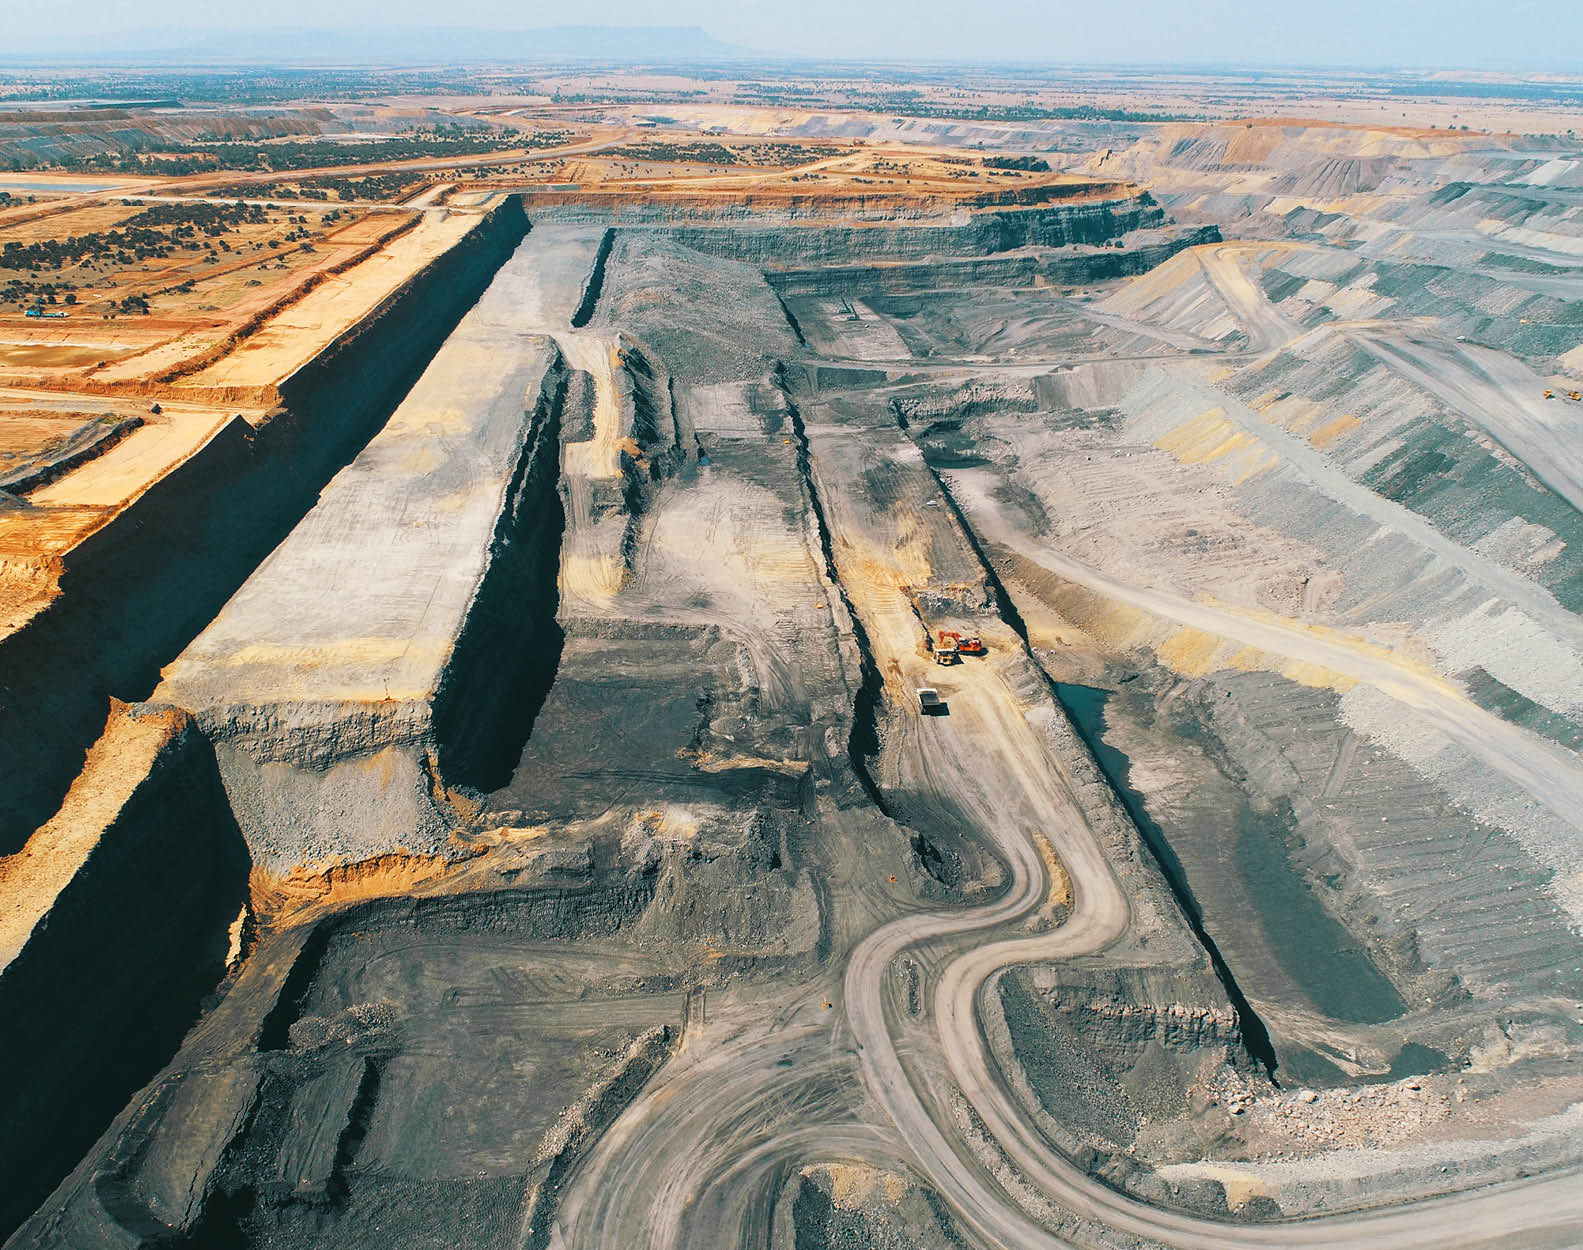 Jellinbah coal mine